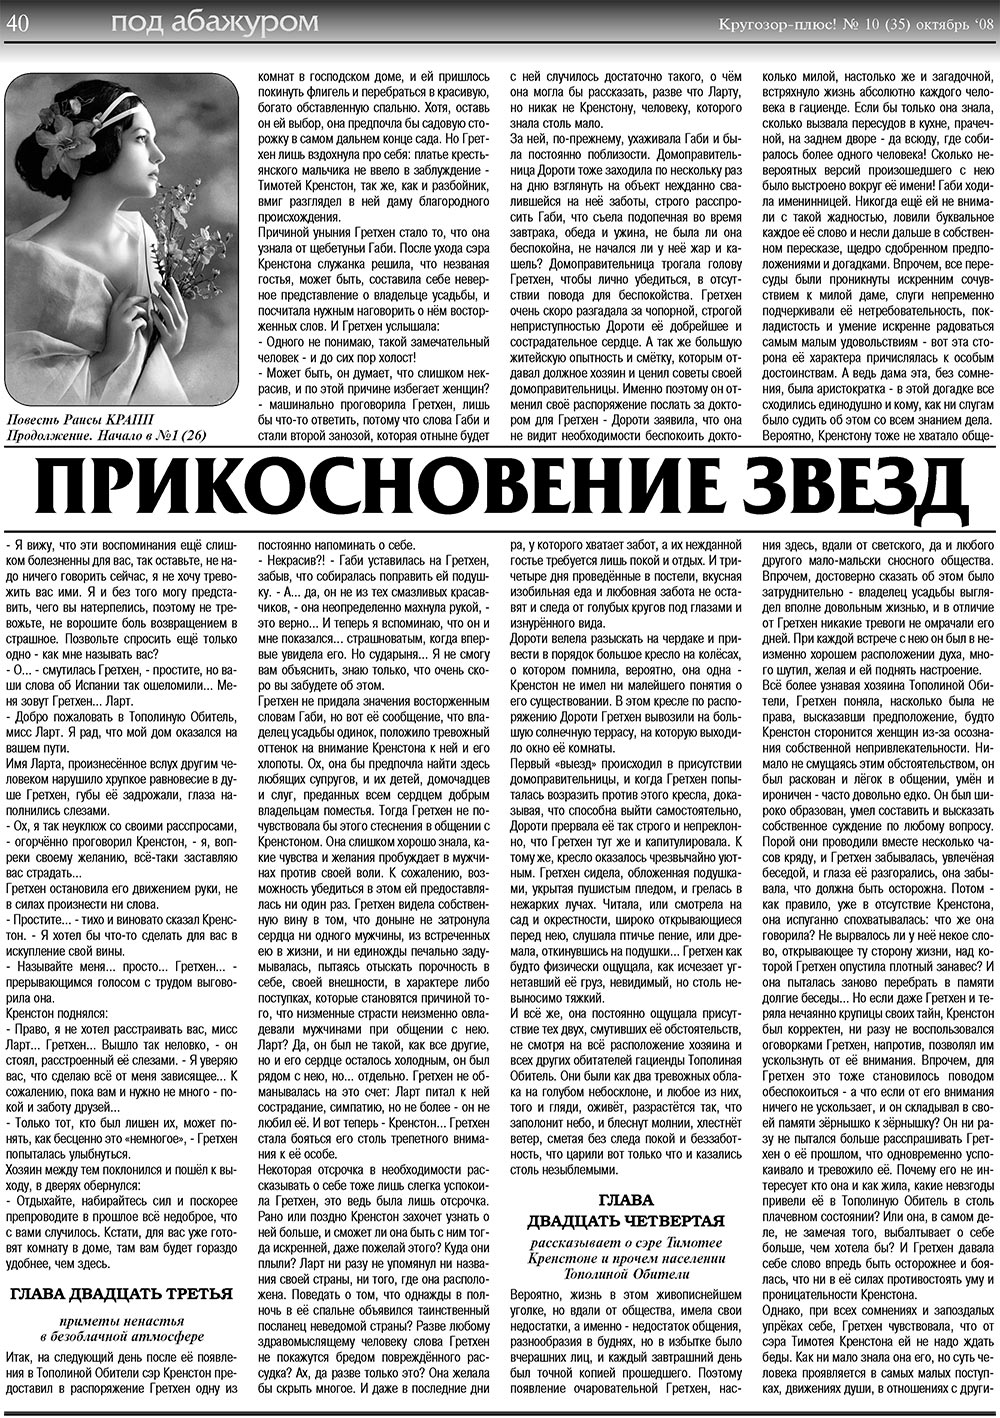 Кругозор плюс!, газета. 2008 №10 стр.40